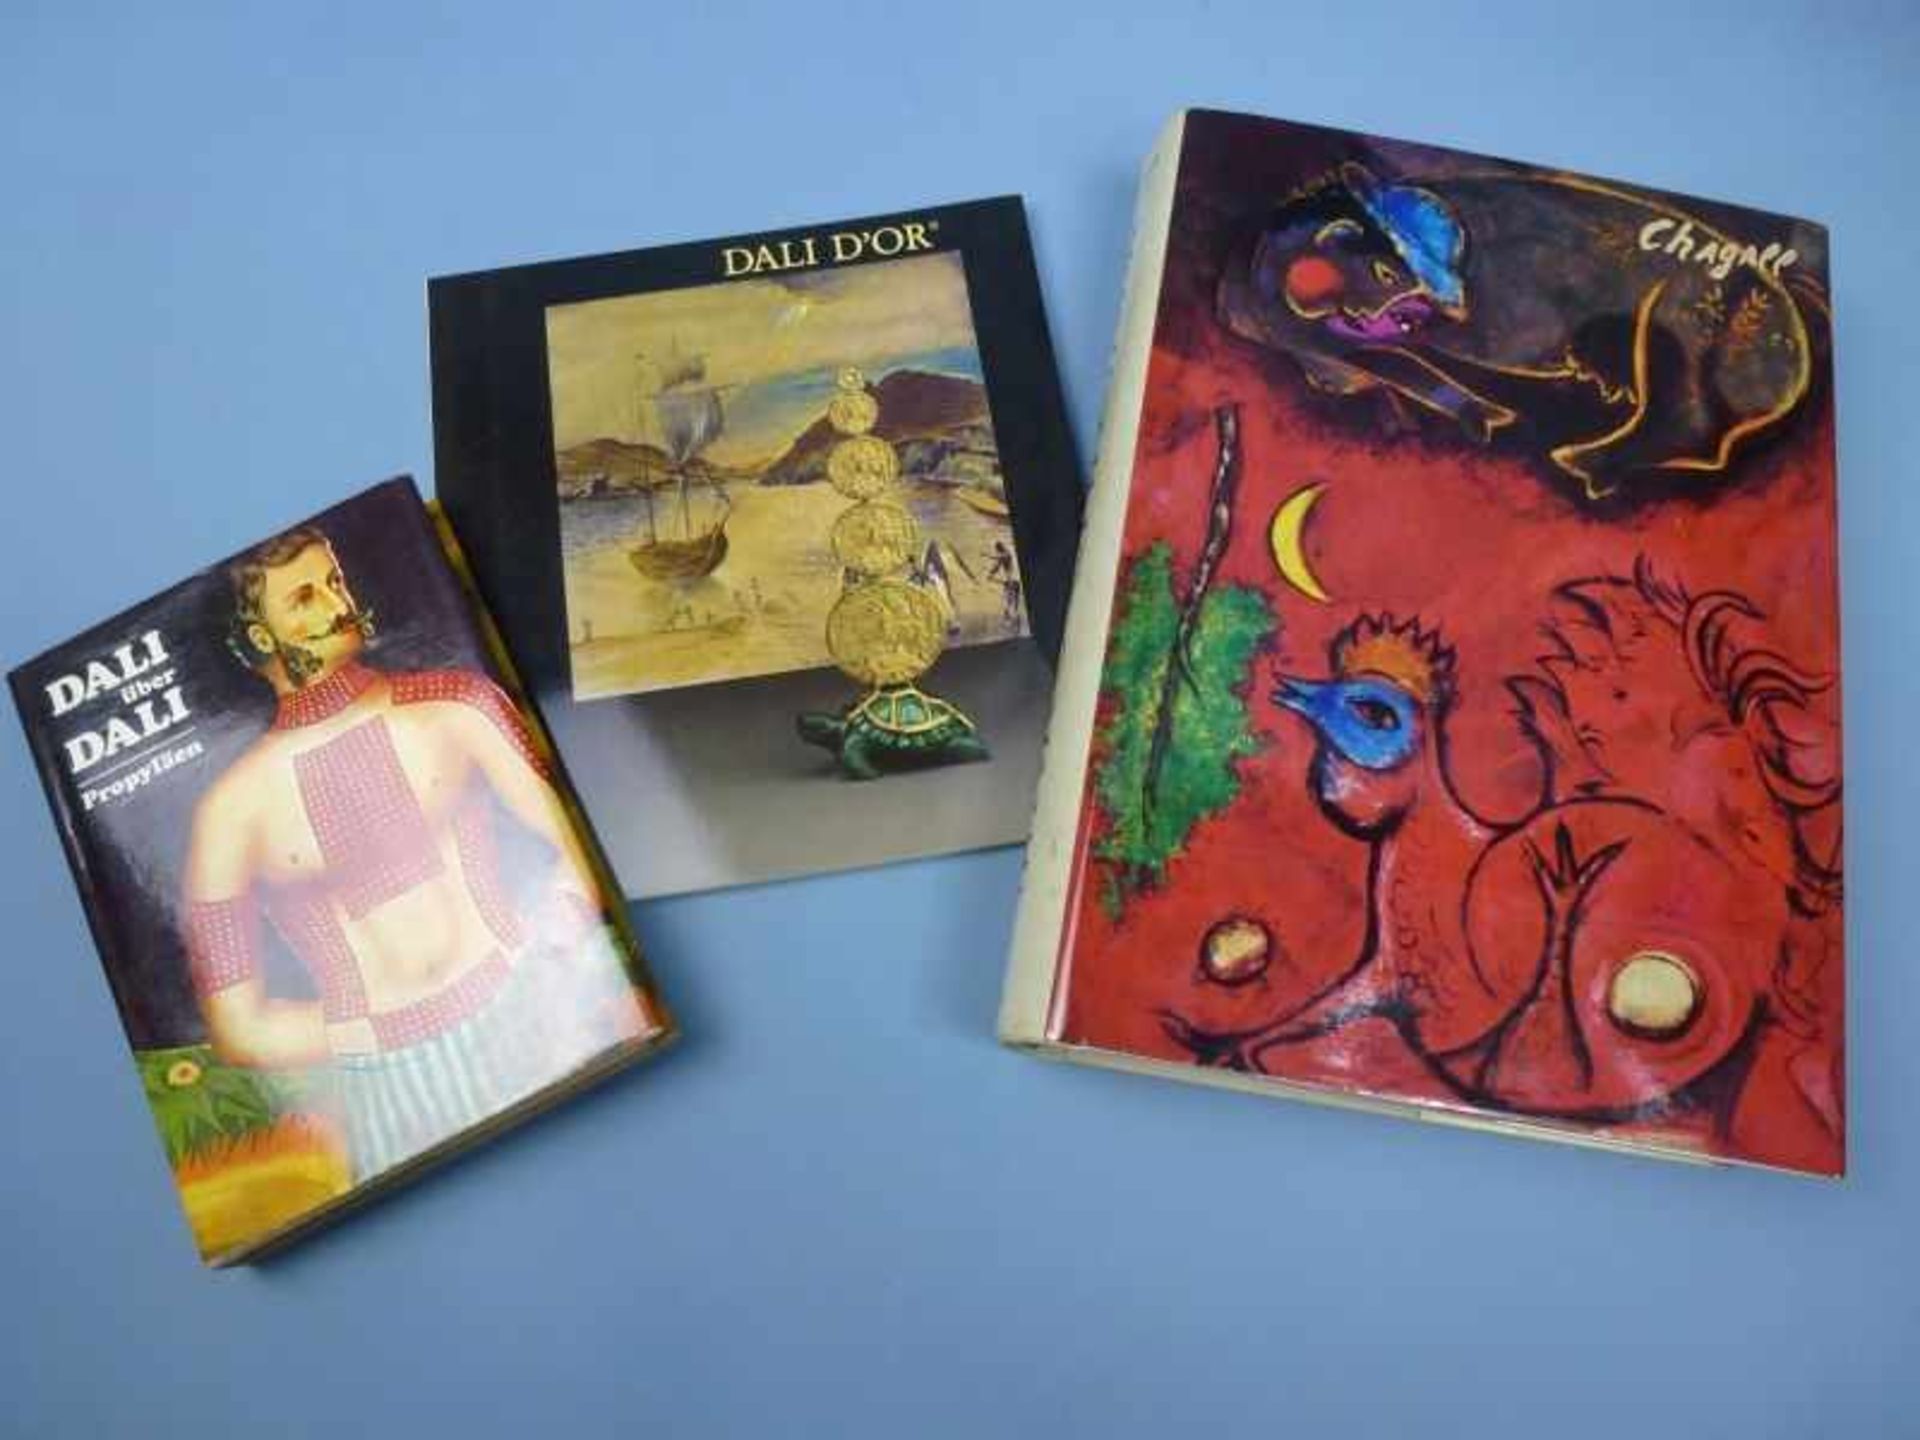 Konvolut Bücher, Dali über Dali (Propyläen), Dali Dór (Orangerie-Reinz), Marc Chagall(DuMont)